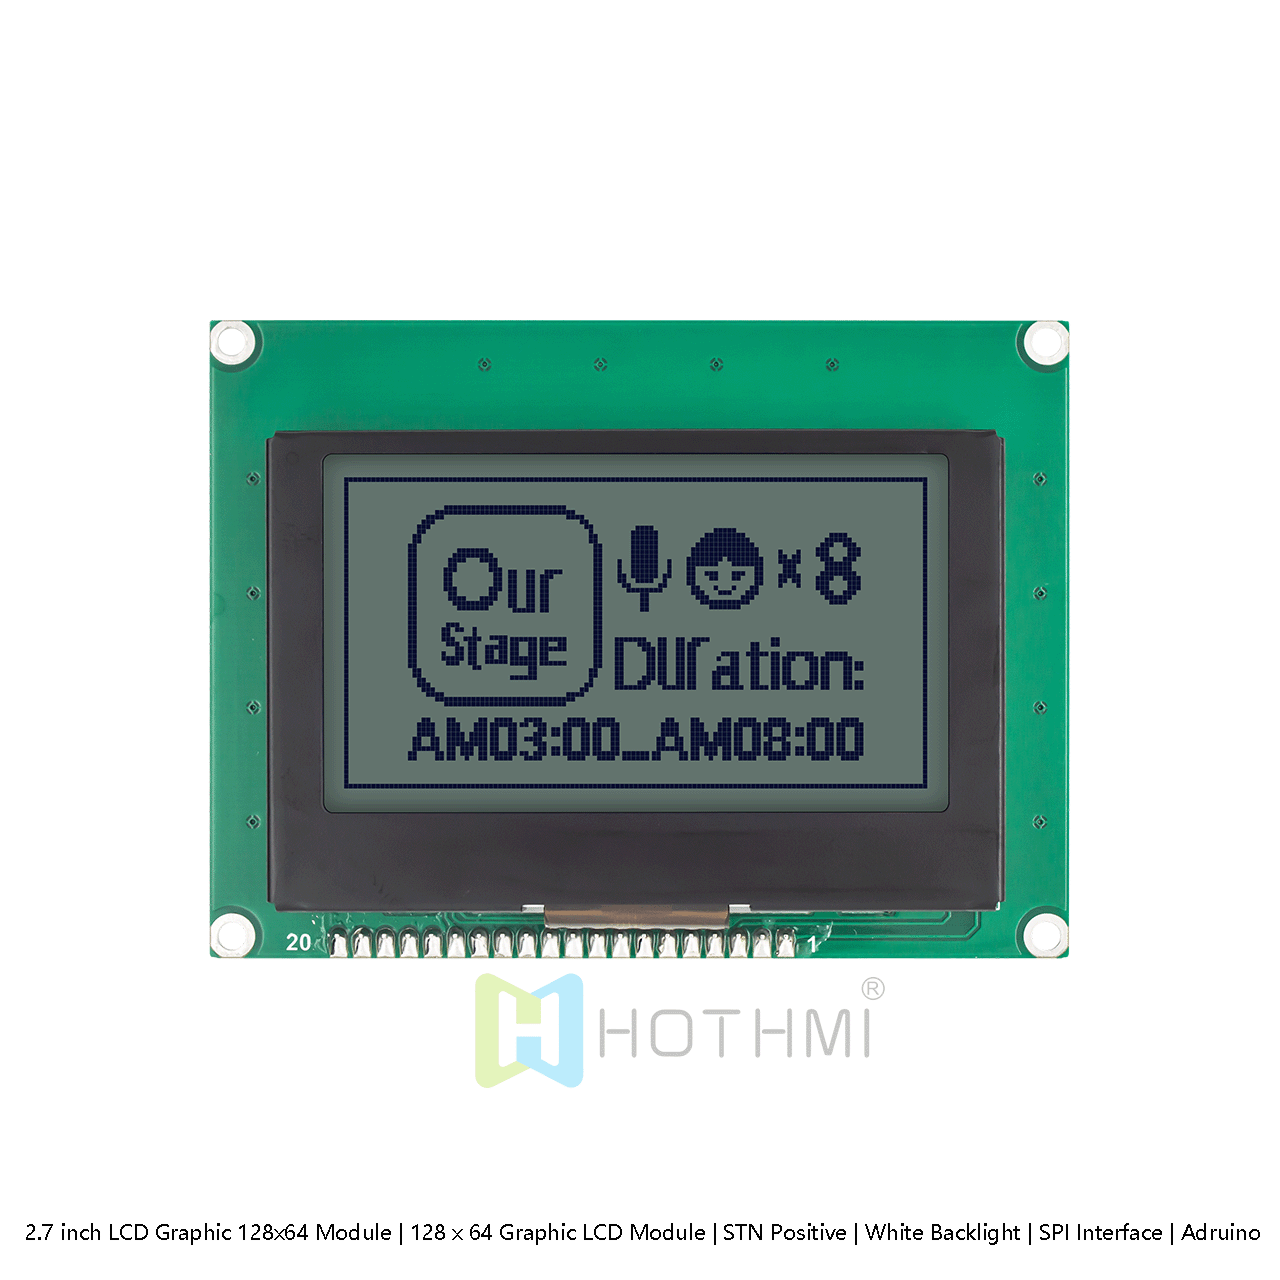 2.7 英寸 图形LCD 128x64 模组 | 128 x 64 图形 LCD  | STN 正极 | 黄绿色背光 | SPI 接口 